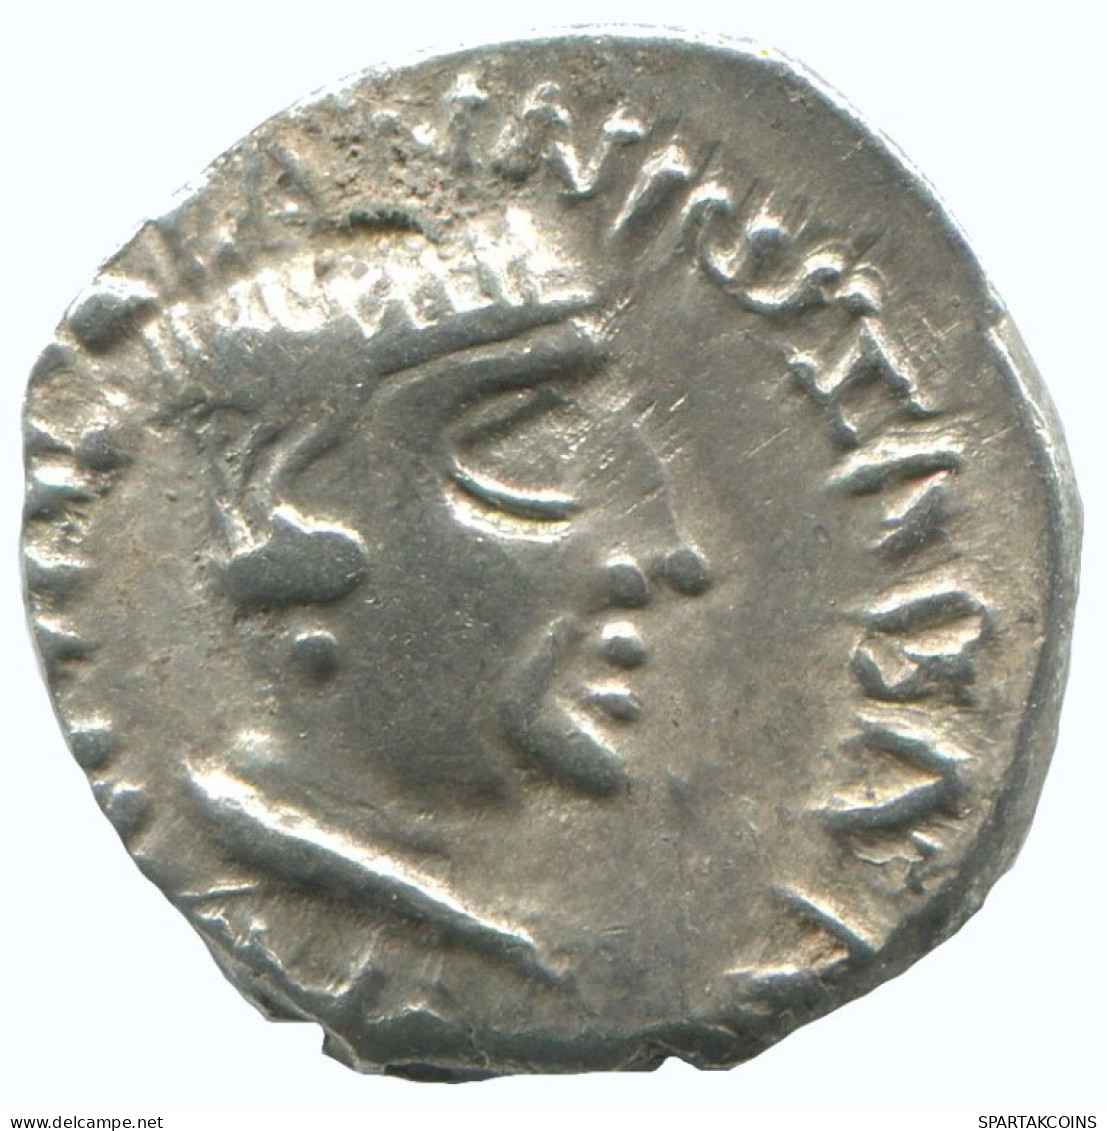 INDO-SKYTHIANS WESTERN KSHATRAPAS KING NAHAPANA AR DRACHM GREEK GRIECHISCHE Münze #AA461.40.D.A - Grecques